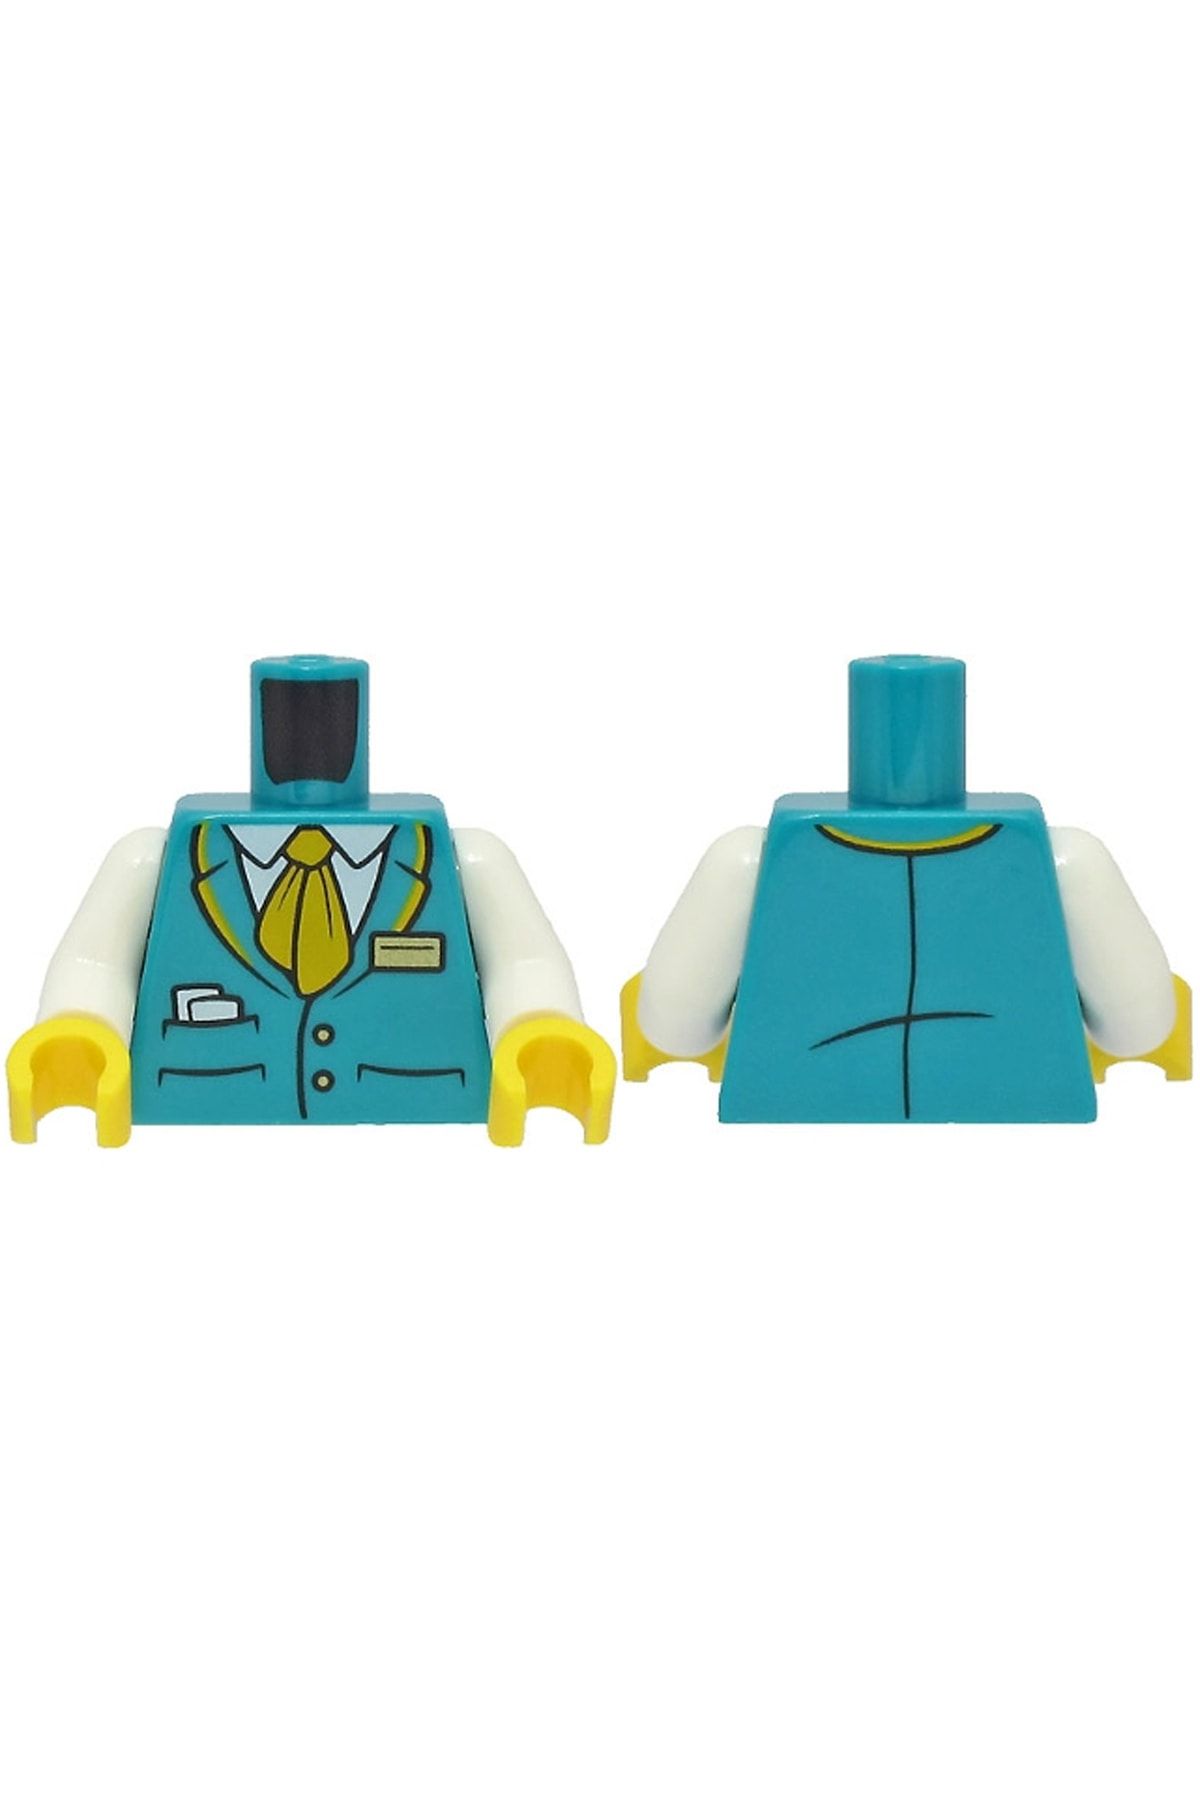 LEGO Orjinal Moc Custom Minifigür Minifigure Kadın Gövde Torso Turkuaz Yelek Tren Biletçi